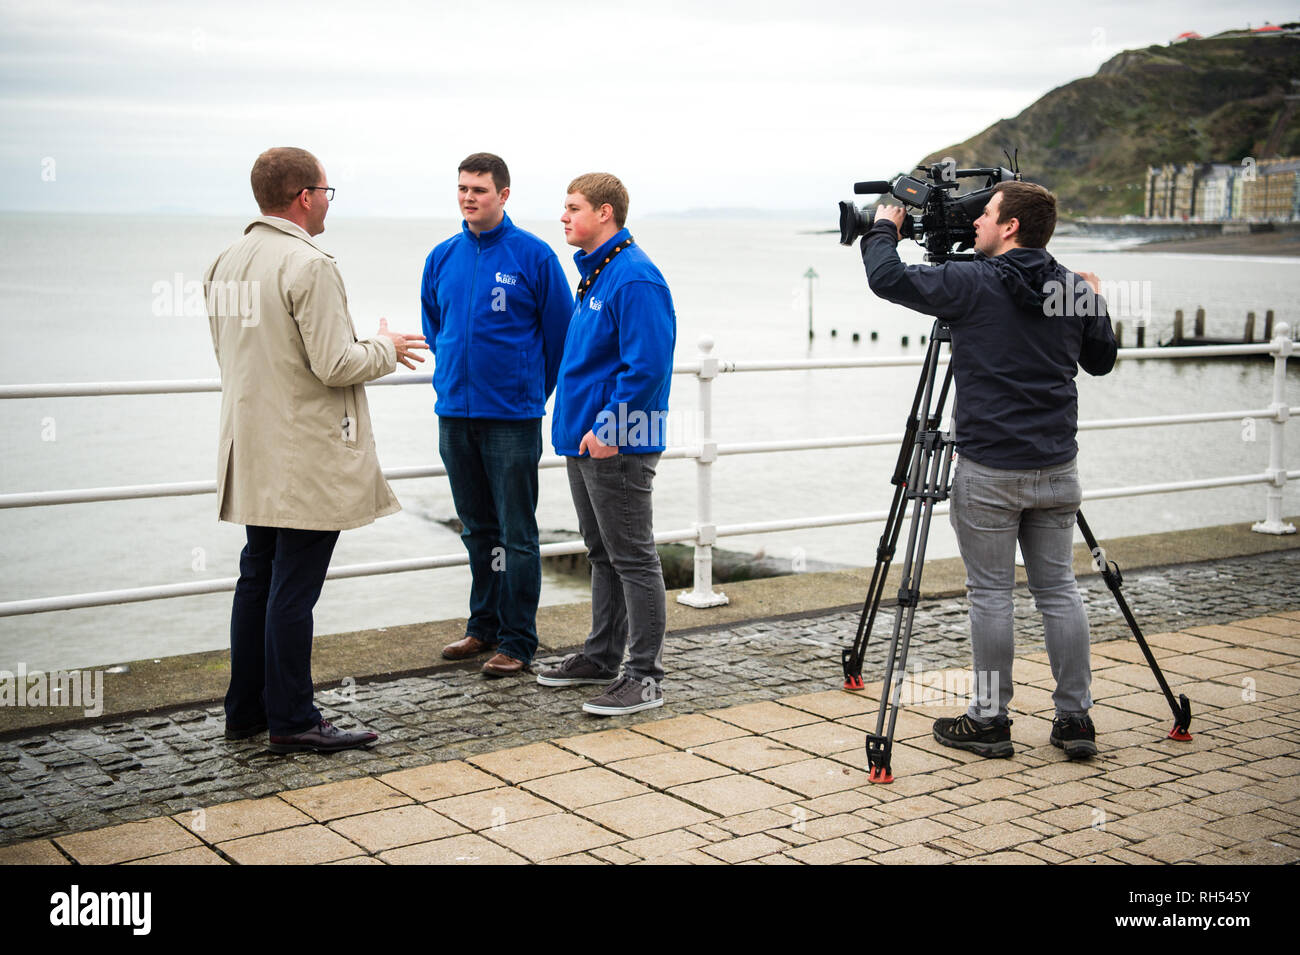 Los medios de difusión en el REINO UNIDO: un reportero de televisión de la BBC y el operador de cámara entrevistando a jóvenes en twoo Aberystwyth seafront, Gales, Reino Unido Foto de stock